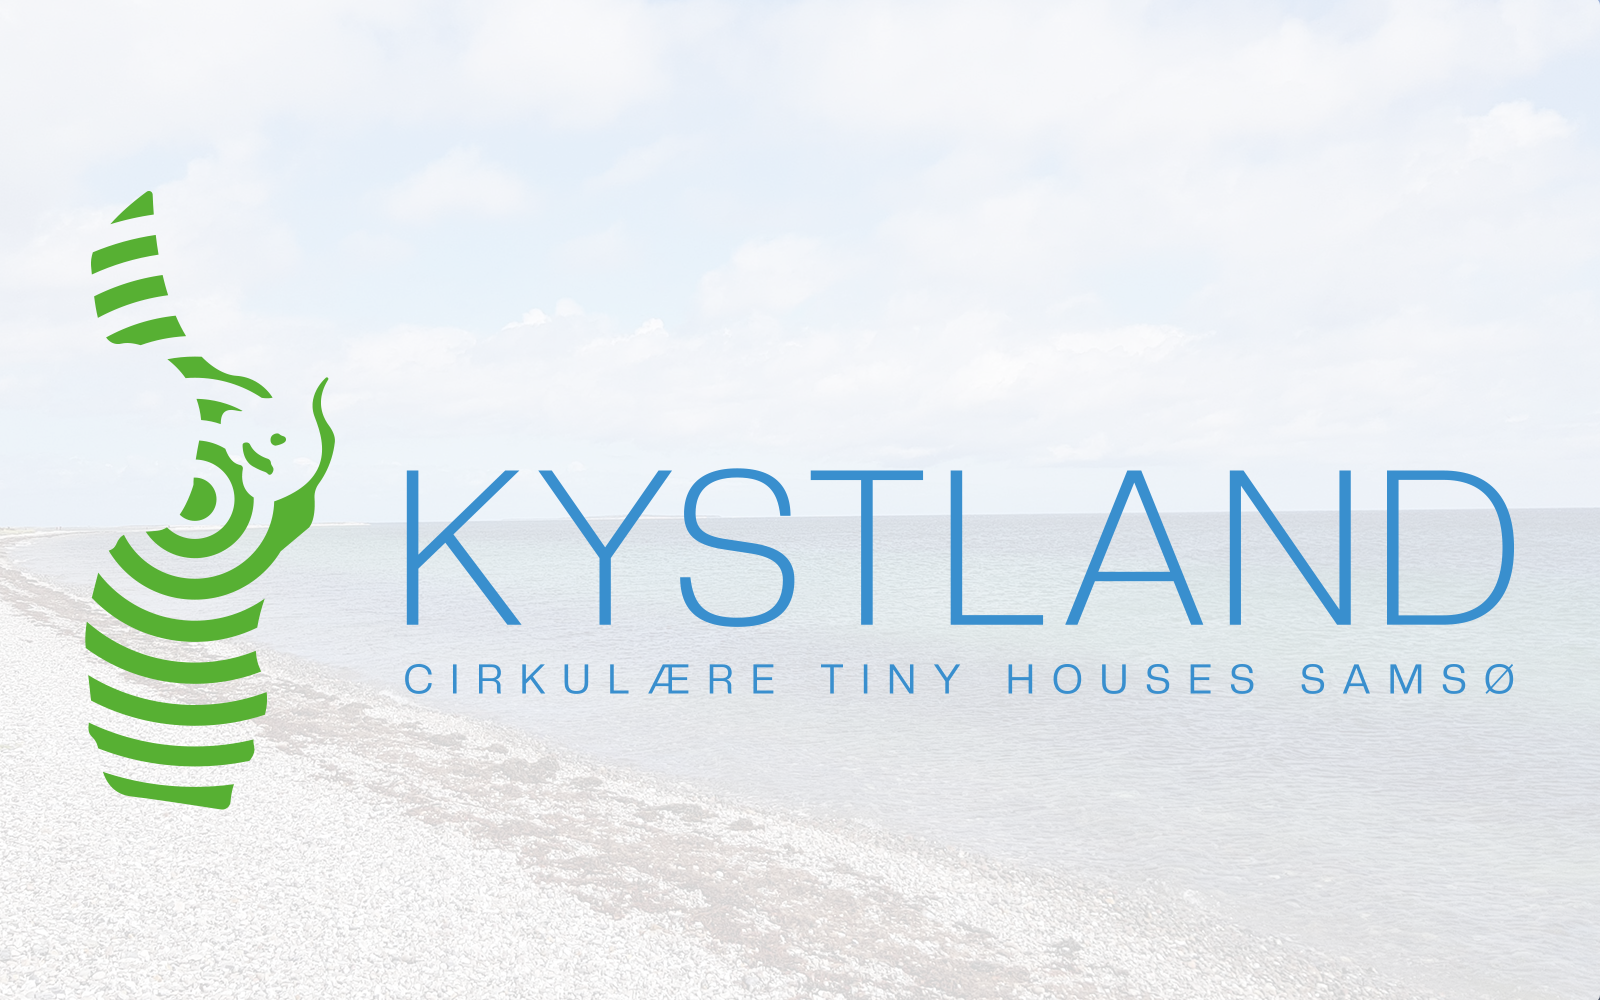 Kystland logo